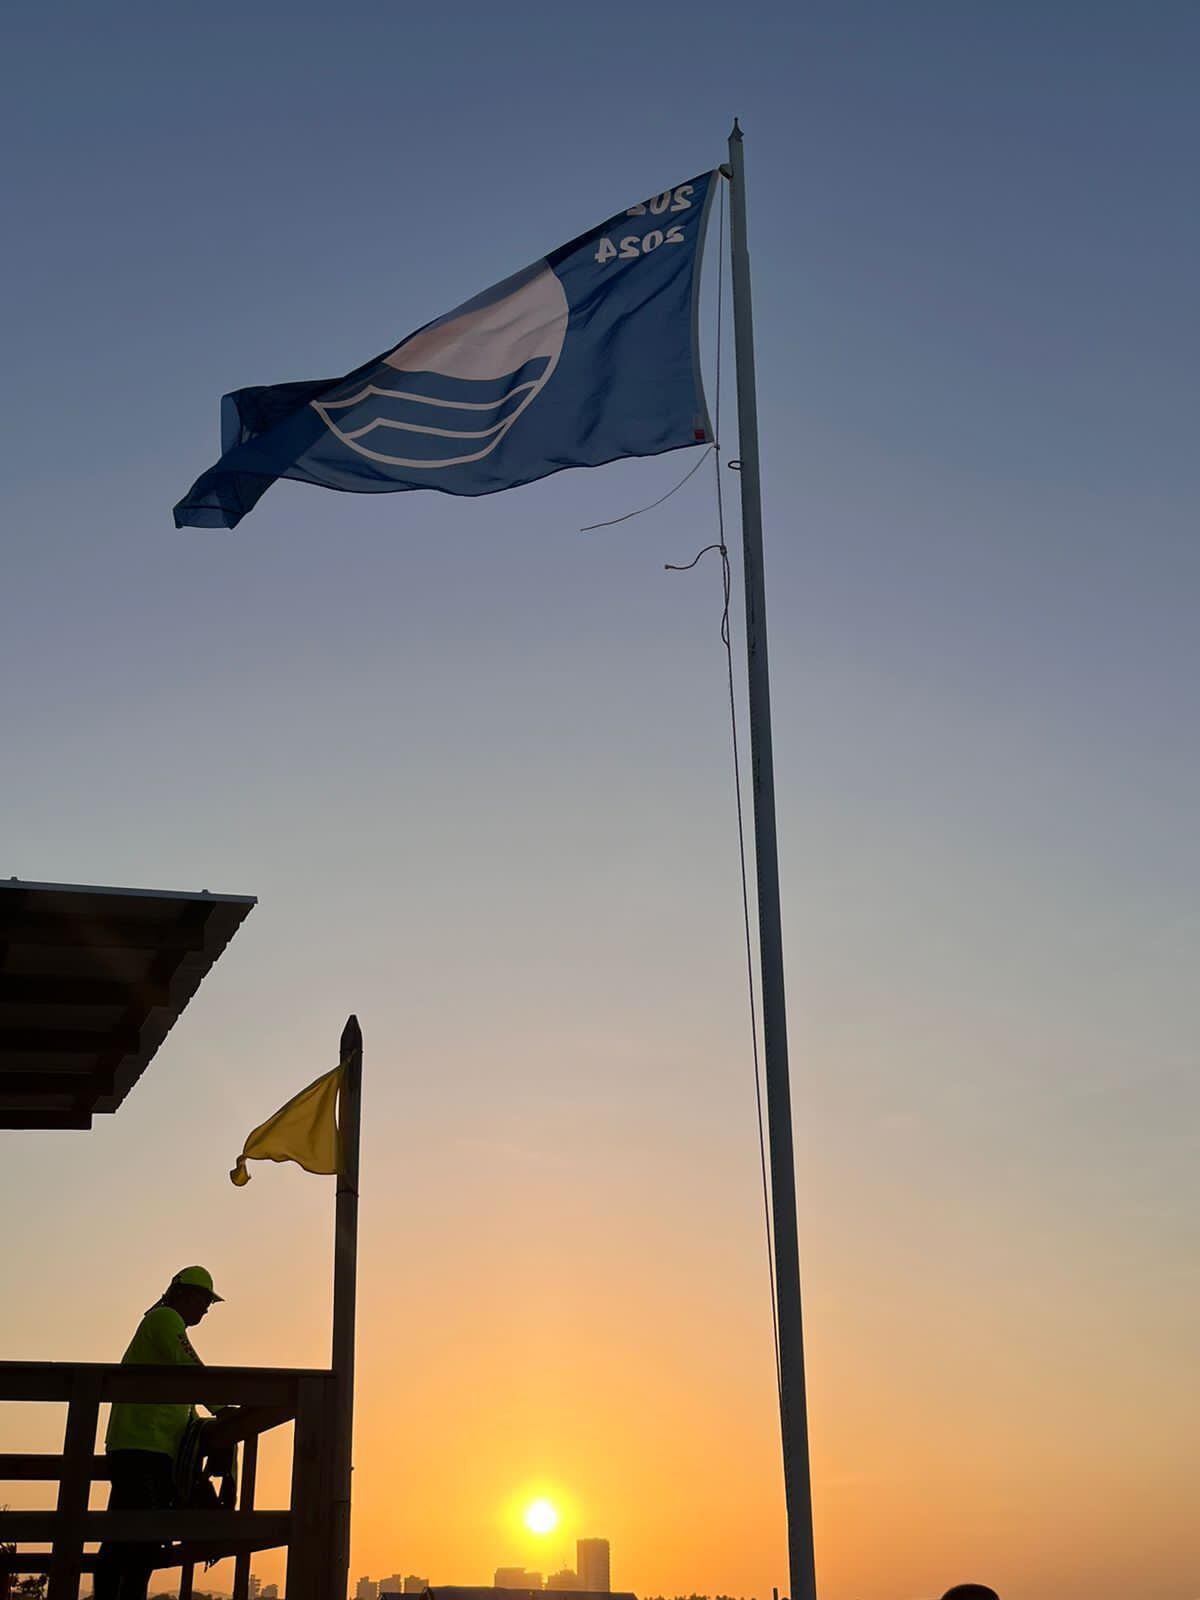 El galardón Blue Flag certifica a las playas en criterios como calidad del agua, seguridad y servicios marino costeros.